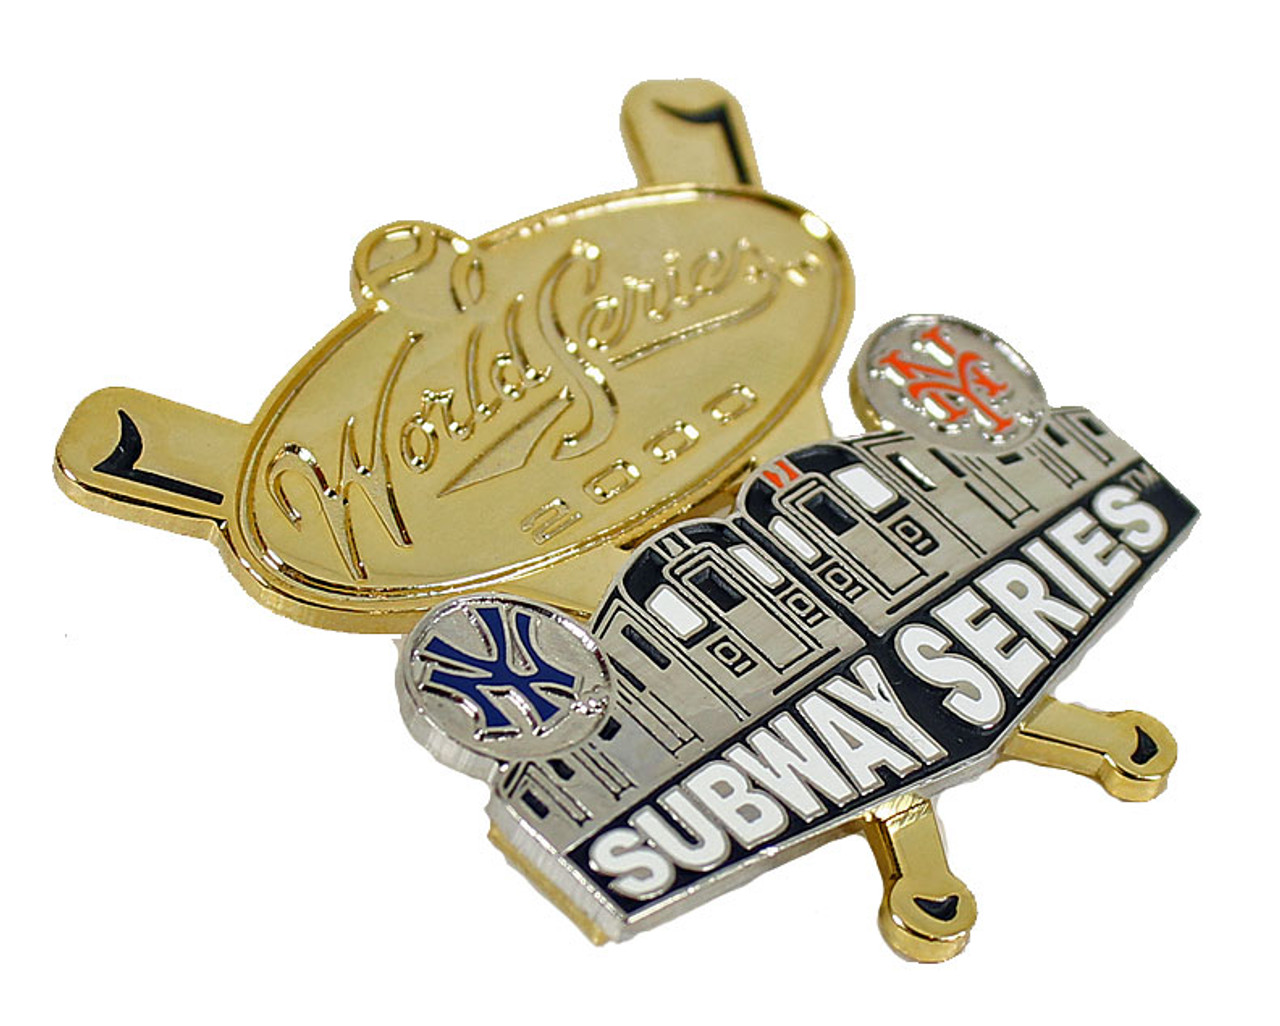 Vintage NY Yankees XL Subway Series Champions World Series 2000